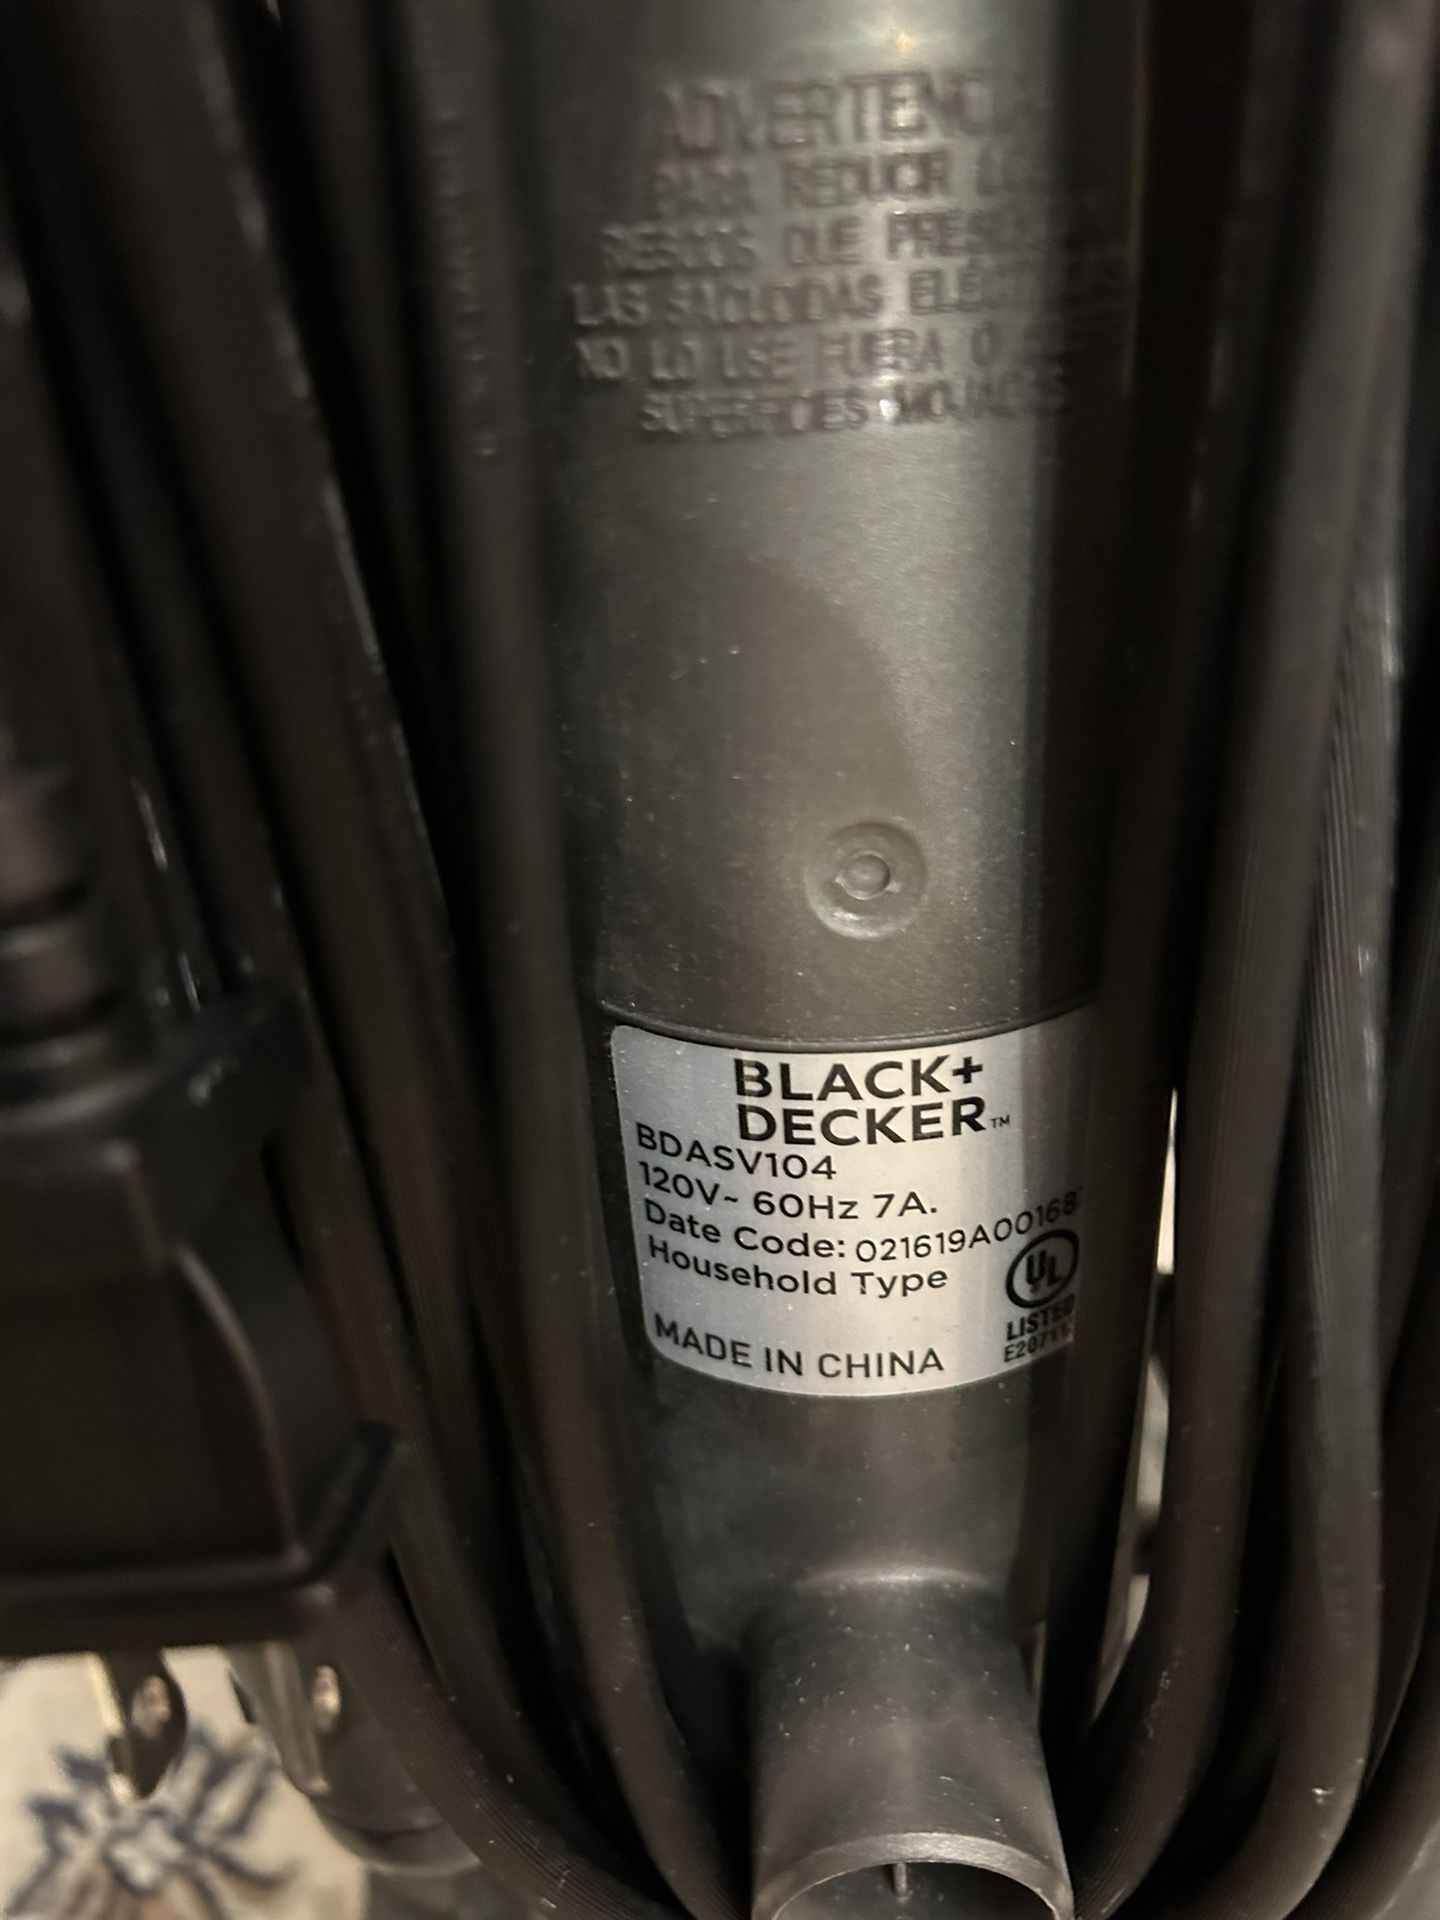 50% Off Black + Decker Airswivel Versatile Upright Vacuum $49.99